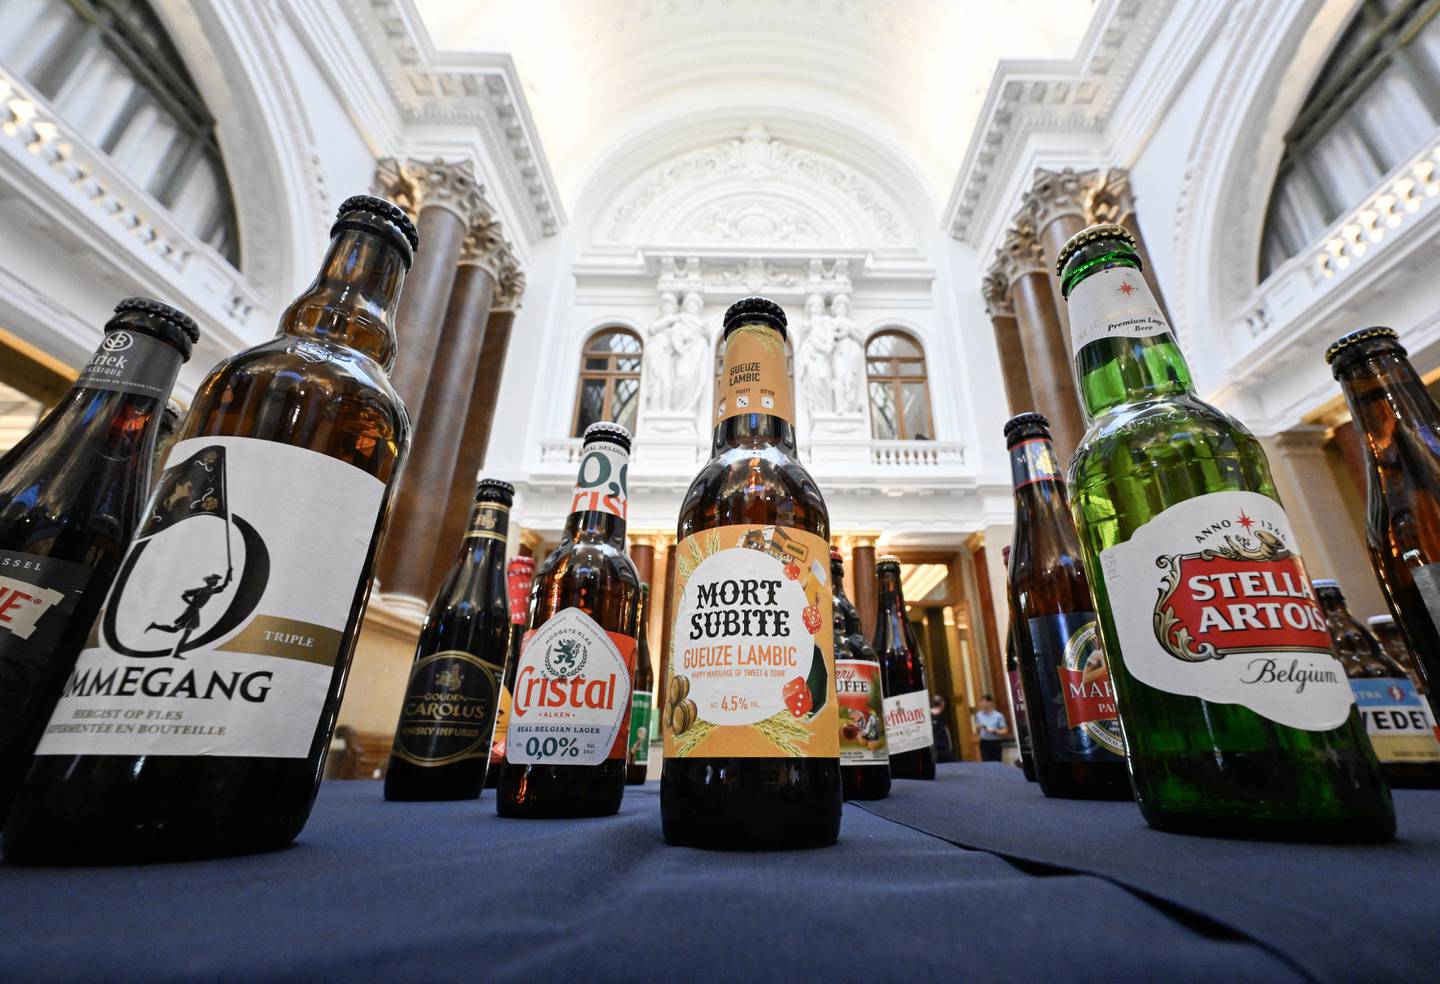 Parte de la muestra de cerveza se exhibida dentro de El Mundo de la Cerveza Belga, el centro de experiencias interactivas más grande del mundo dedicado a la cerveza en Bruselas. Fotografía: